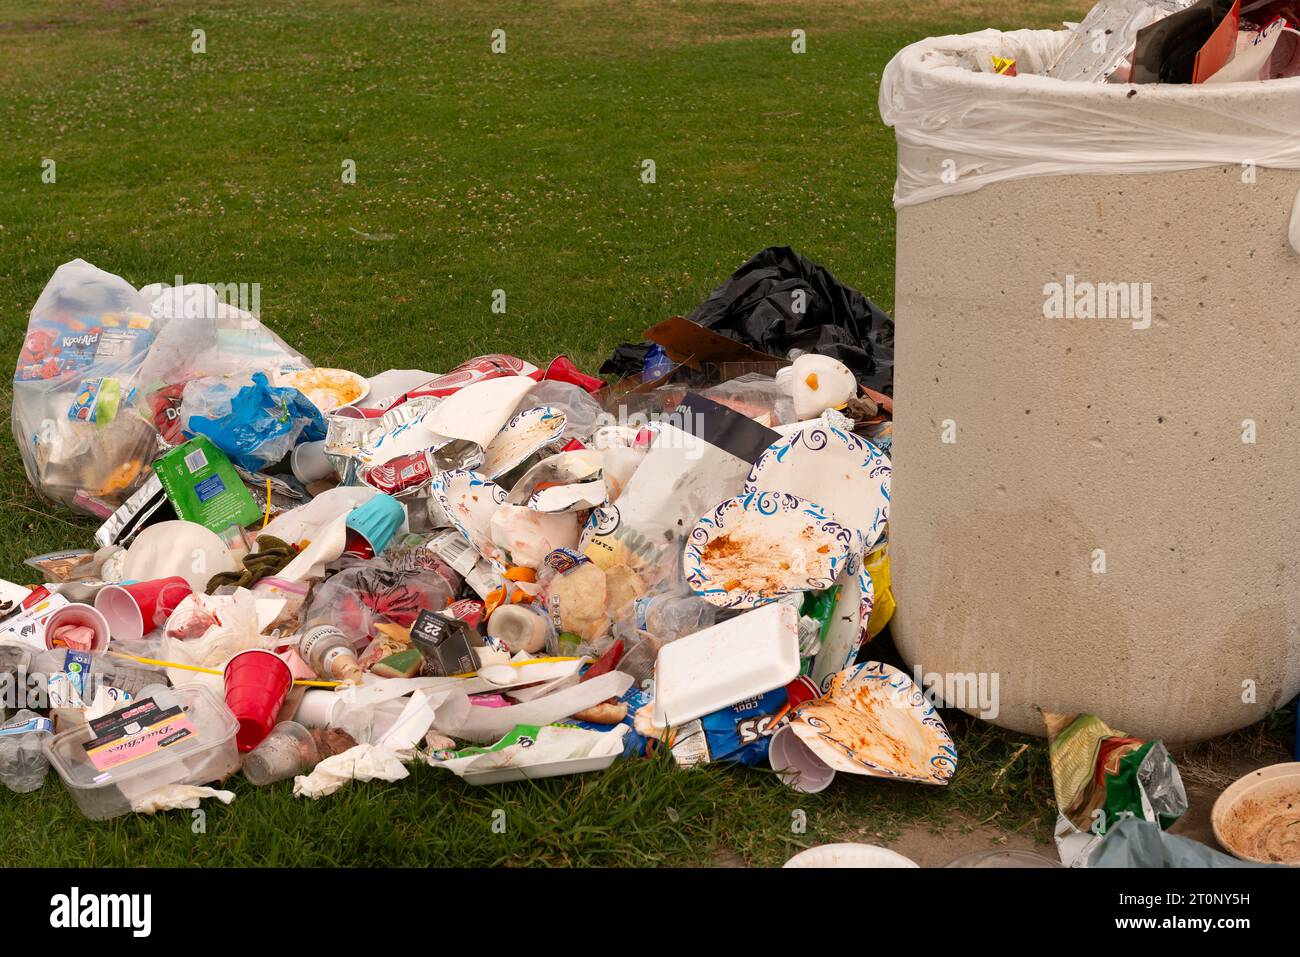 Un accumulo di spazzatura lasciato alle spalle dopo le celebrazioni del giorno dell'indipendenza (4 luglio). Foto Stock